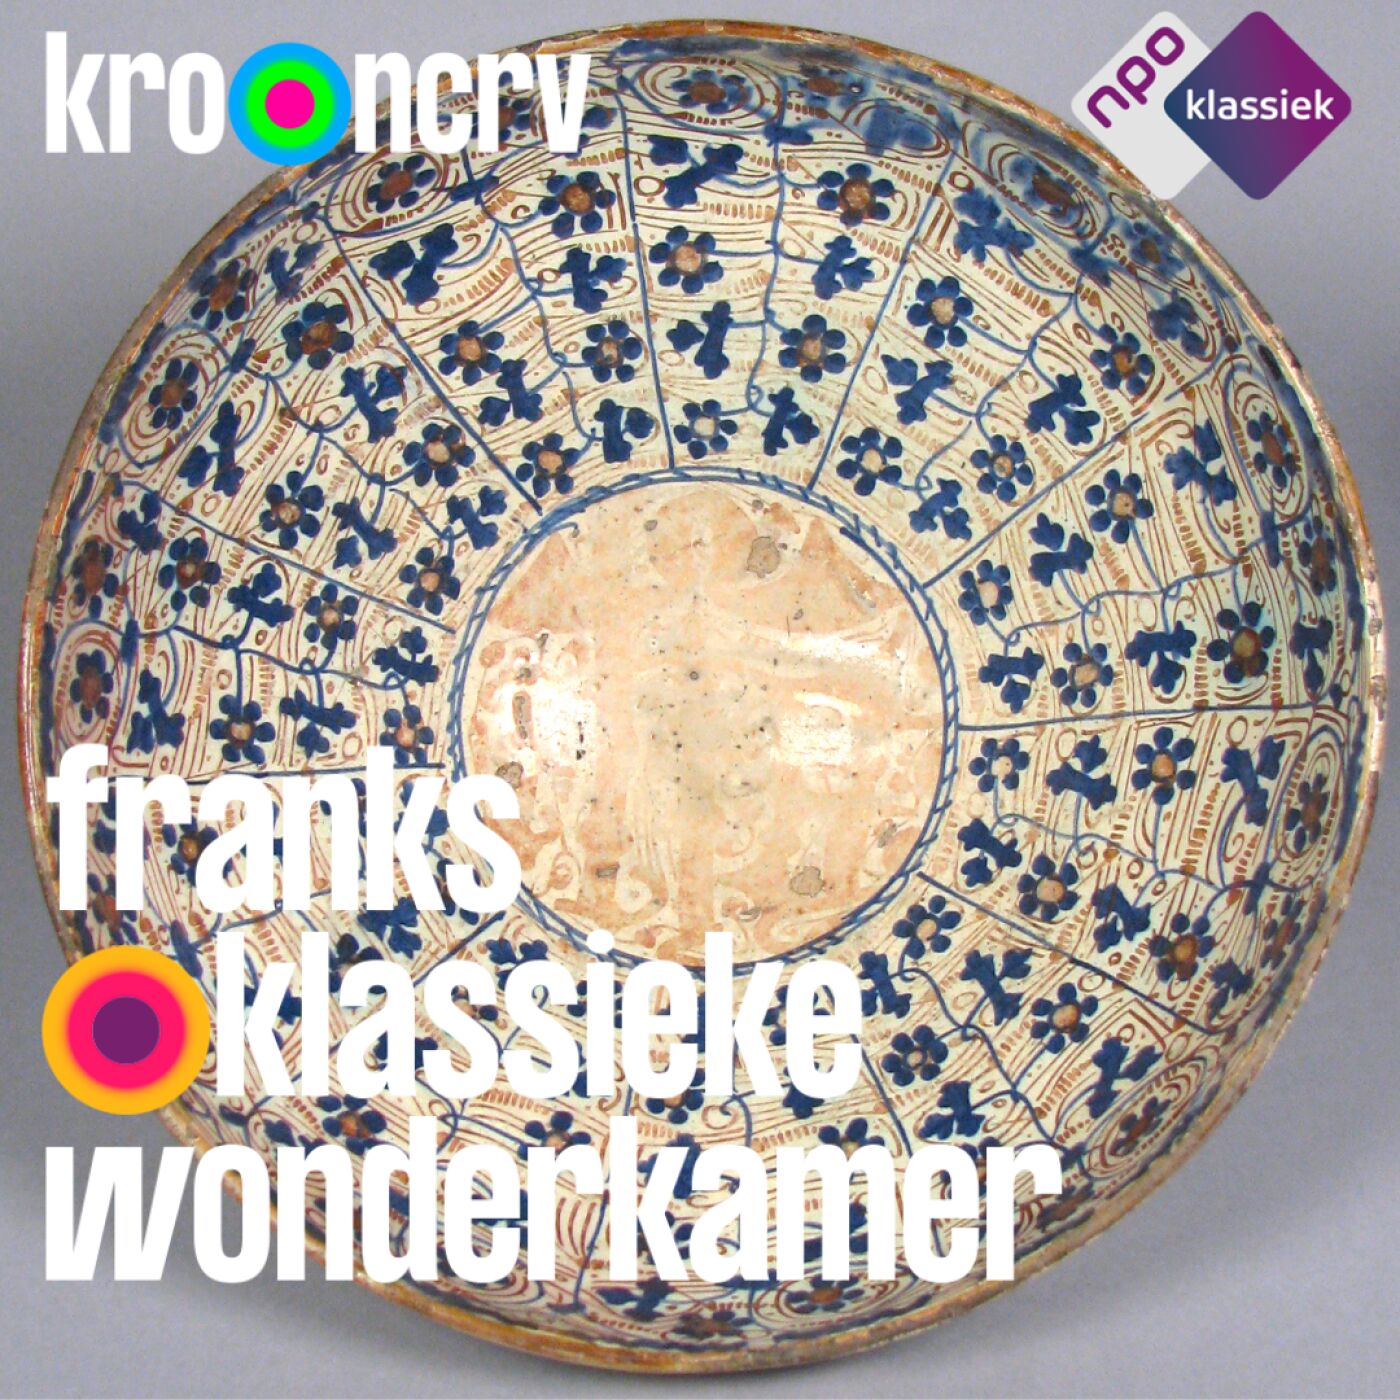 #239 - Franks Klassieke Wonderkamer: ‘Een liedje van eeuwen her’